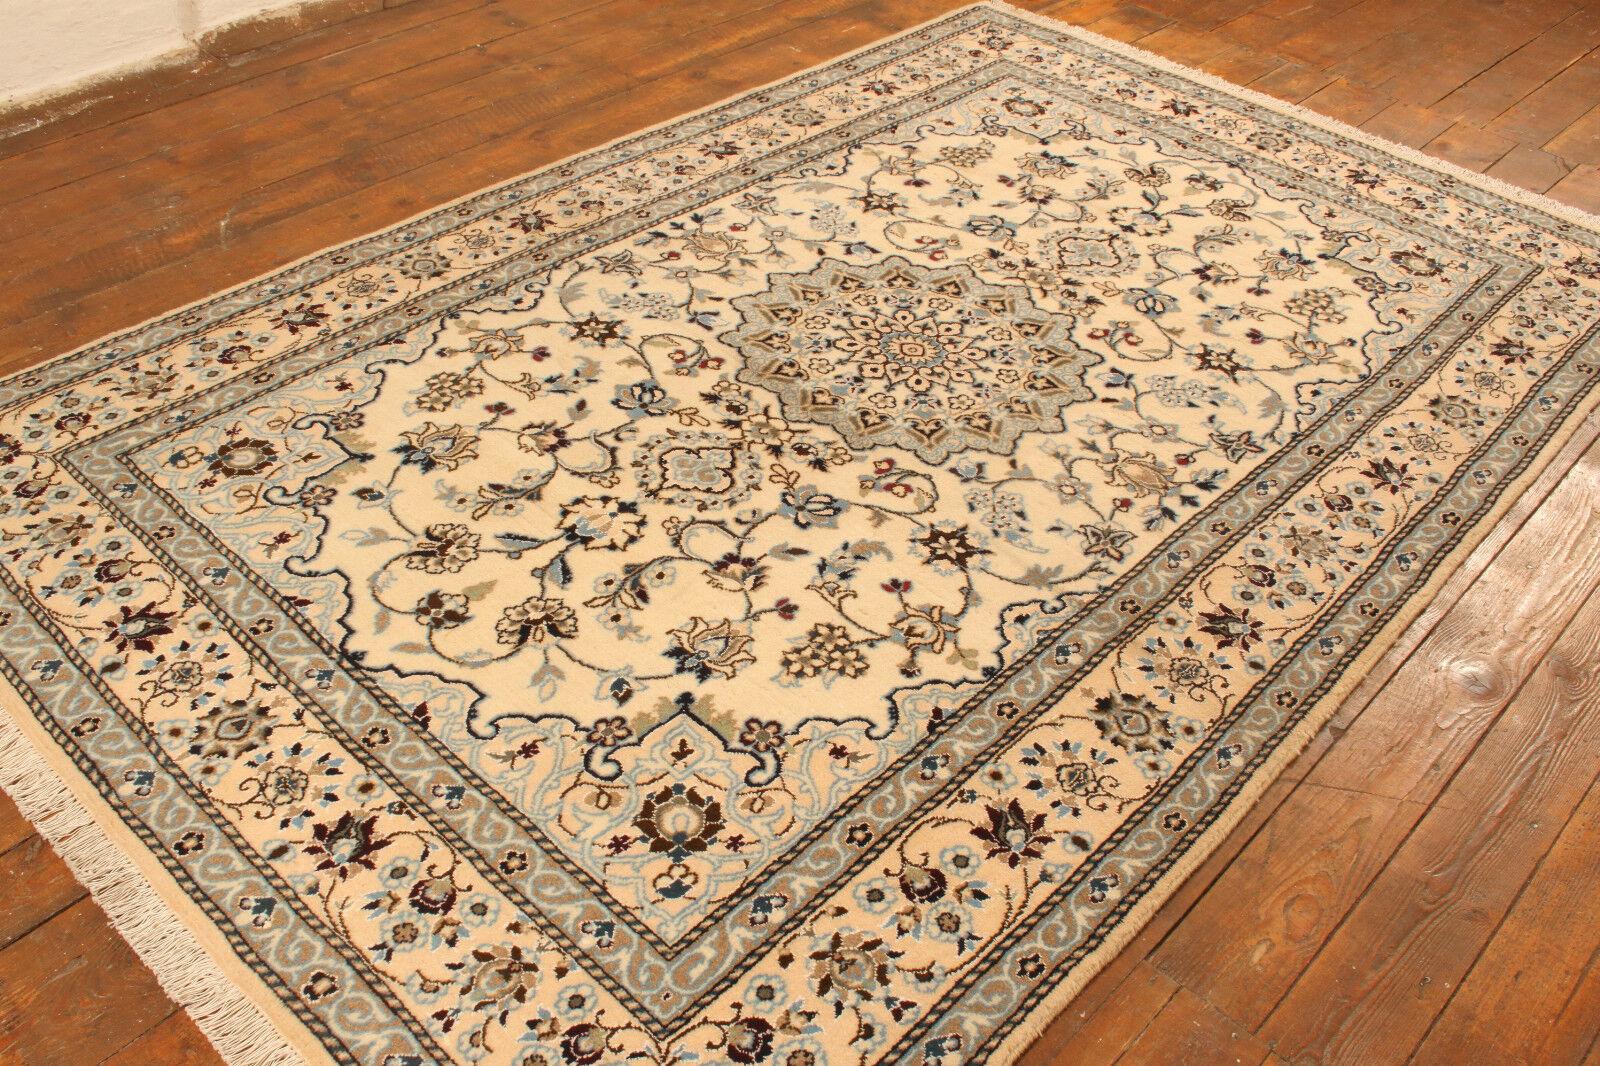 Handgefertigter Vintage Persian Style Nain Teppich mit Seide (186cm x 294cm / 6.1' x 9.6')

Genießen Sie die Pracht unseres handgefertigten Nain-Teppichs im persischen Vintage-Stil mit Seide, ein Meisterwerk aus den 1970er Jahren. Dieser hochwertige